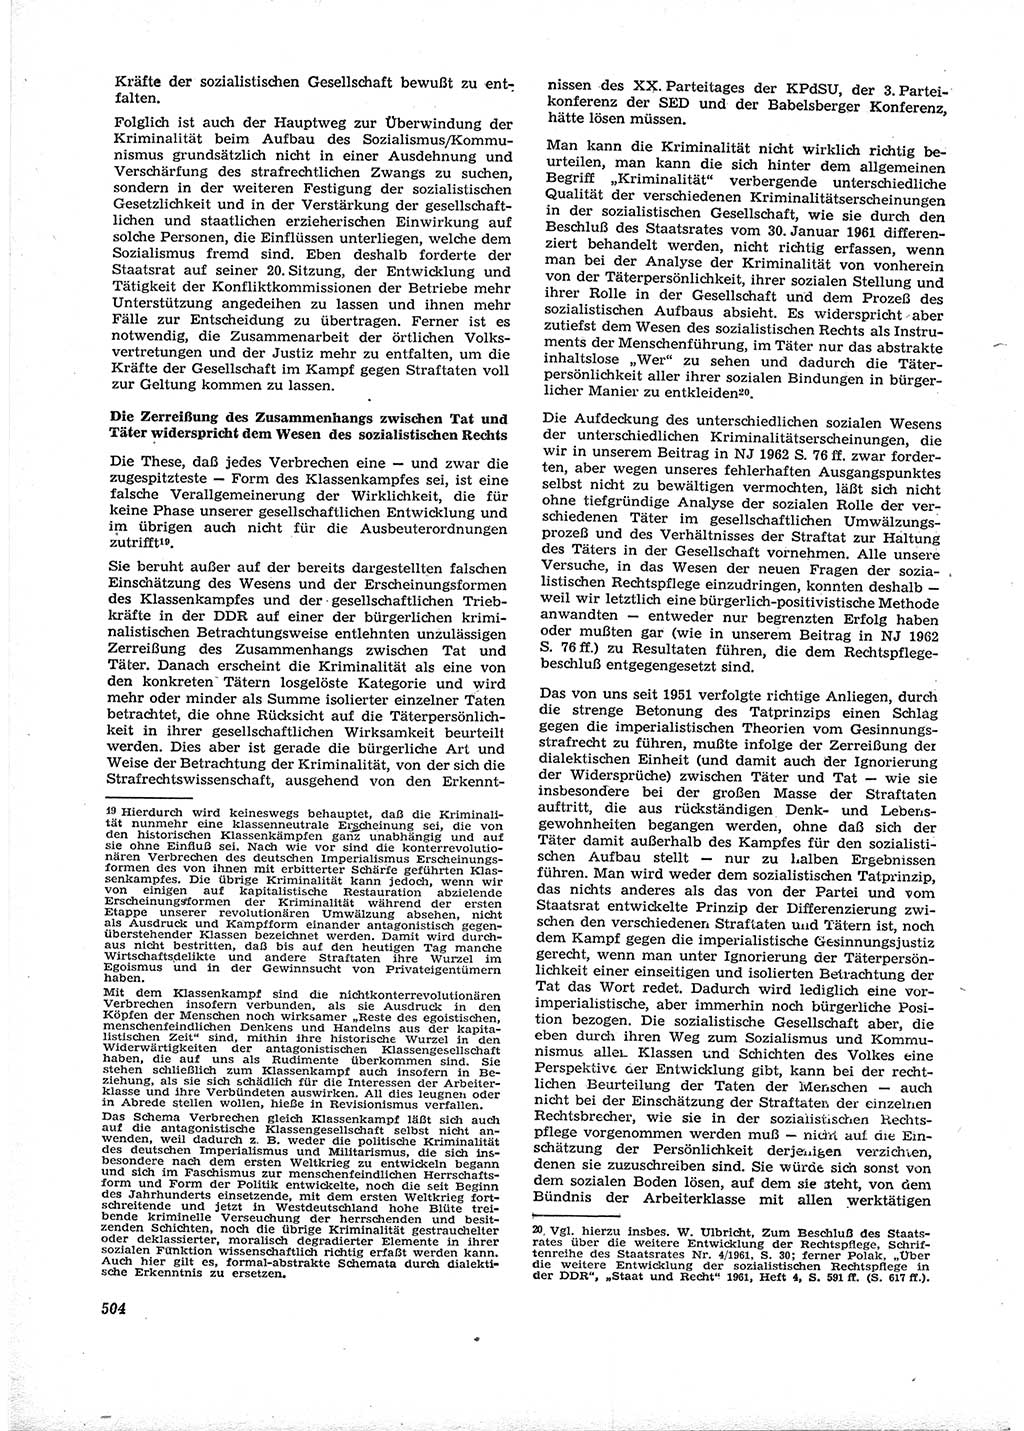 Neue Justiz (NJ), Zeitschrift für Recht und Rechtswissenschaft [Deutsche Demokratische Republik (DDR)], 16. Jahrgang 1962, Seite 504 (NJ DDR 1962, S. 504)